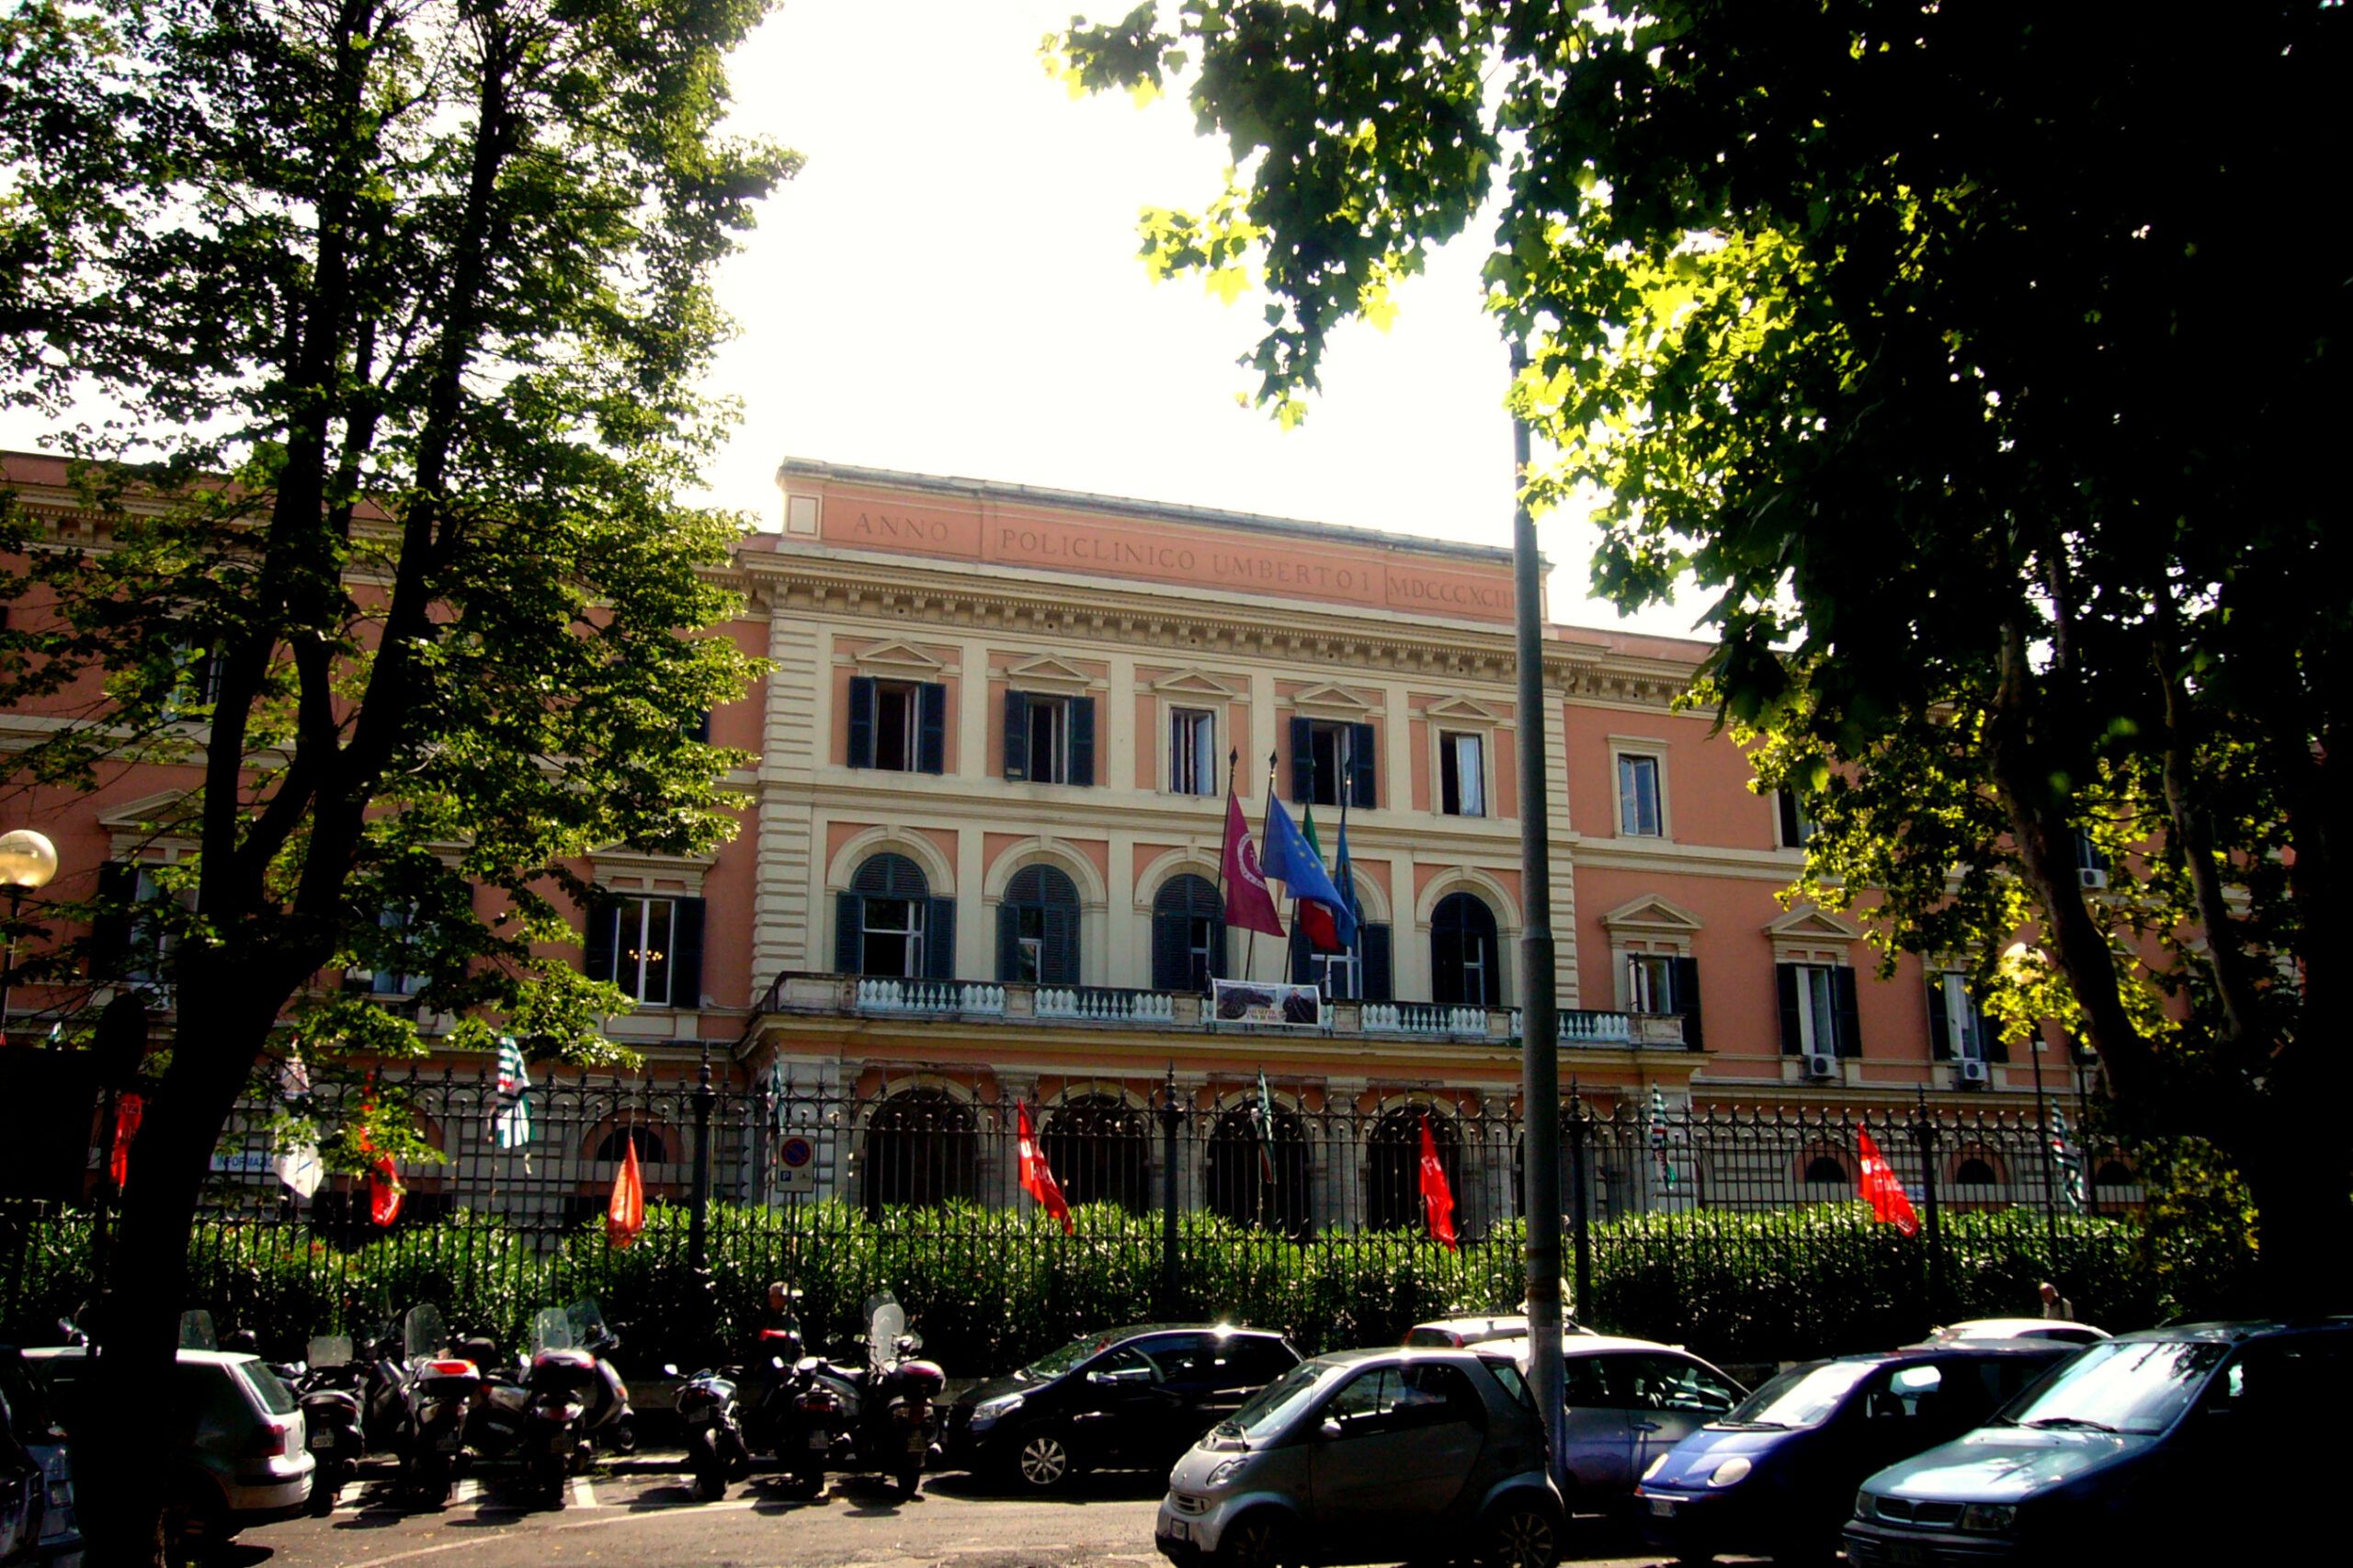 Policlinico Umberto I - Roma